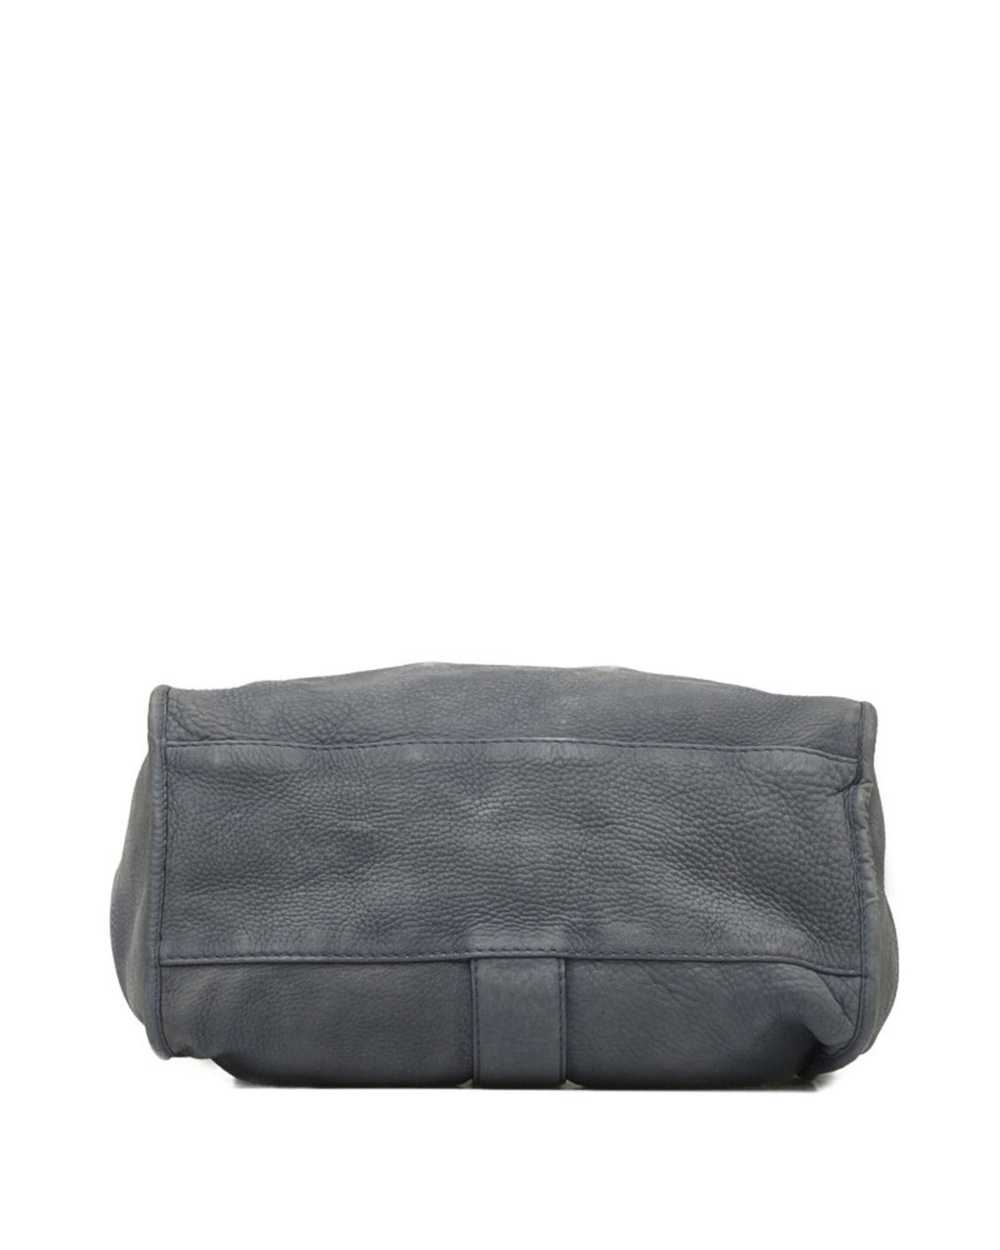 Gucci Luxury Soft Leather Shoulder Bag - image 4